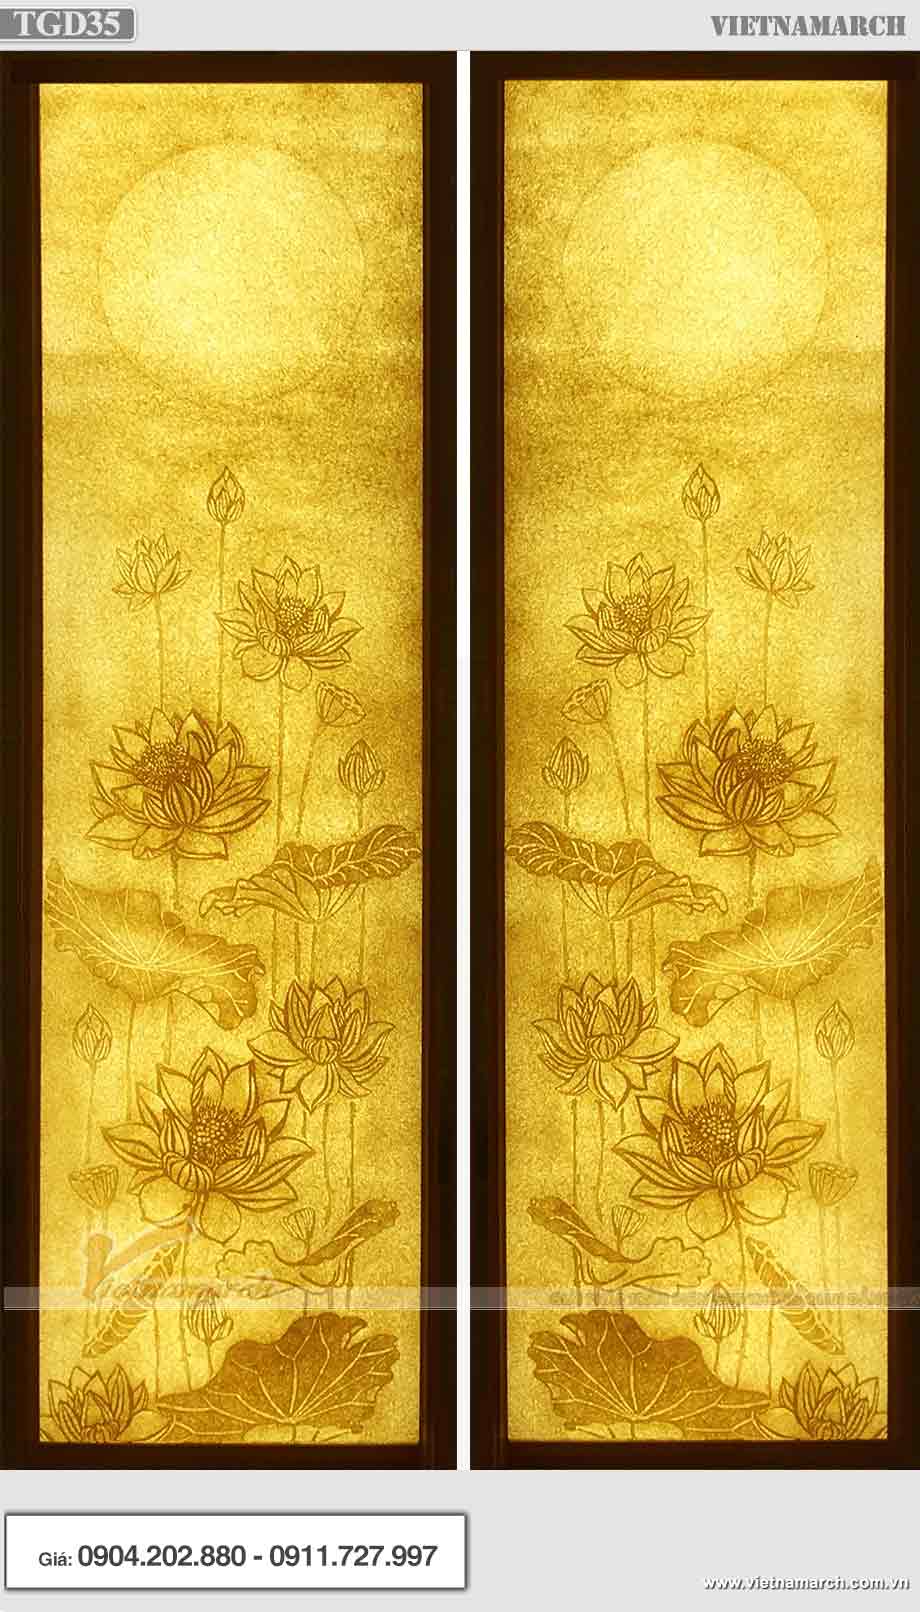 Mẫu tranh giấy dừa hoa sen hình chữ nhật - TGD35